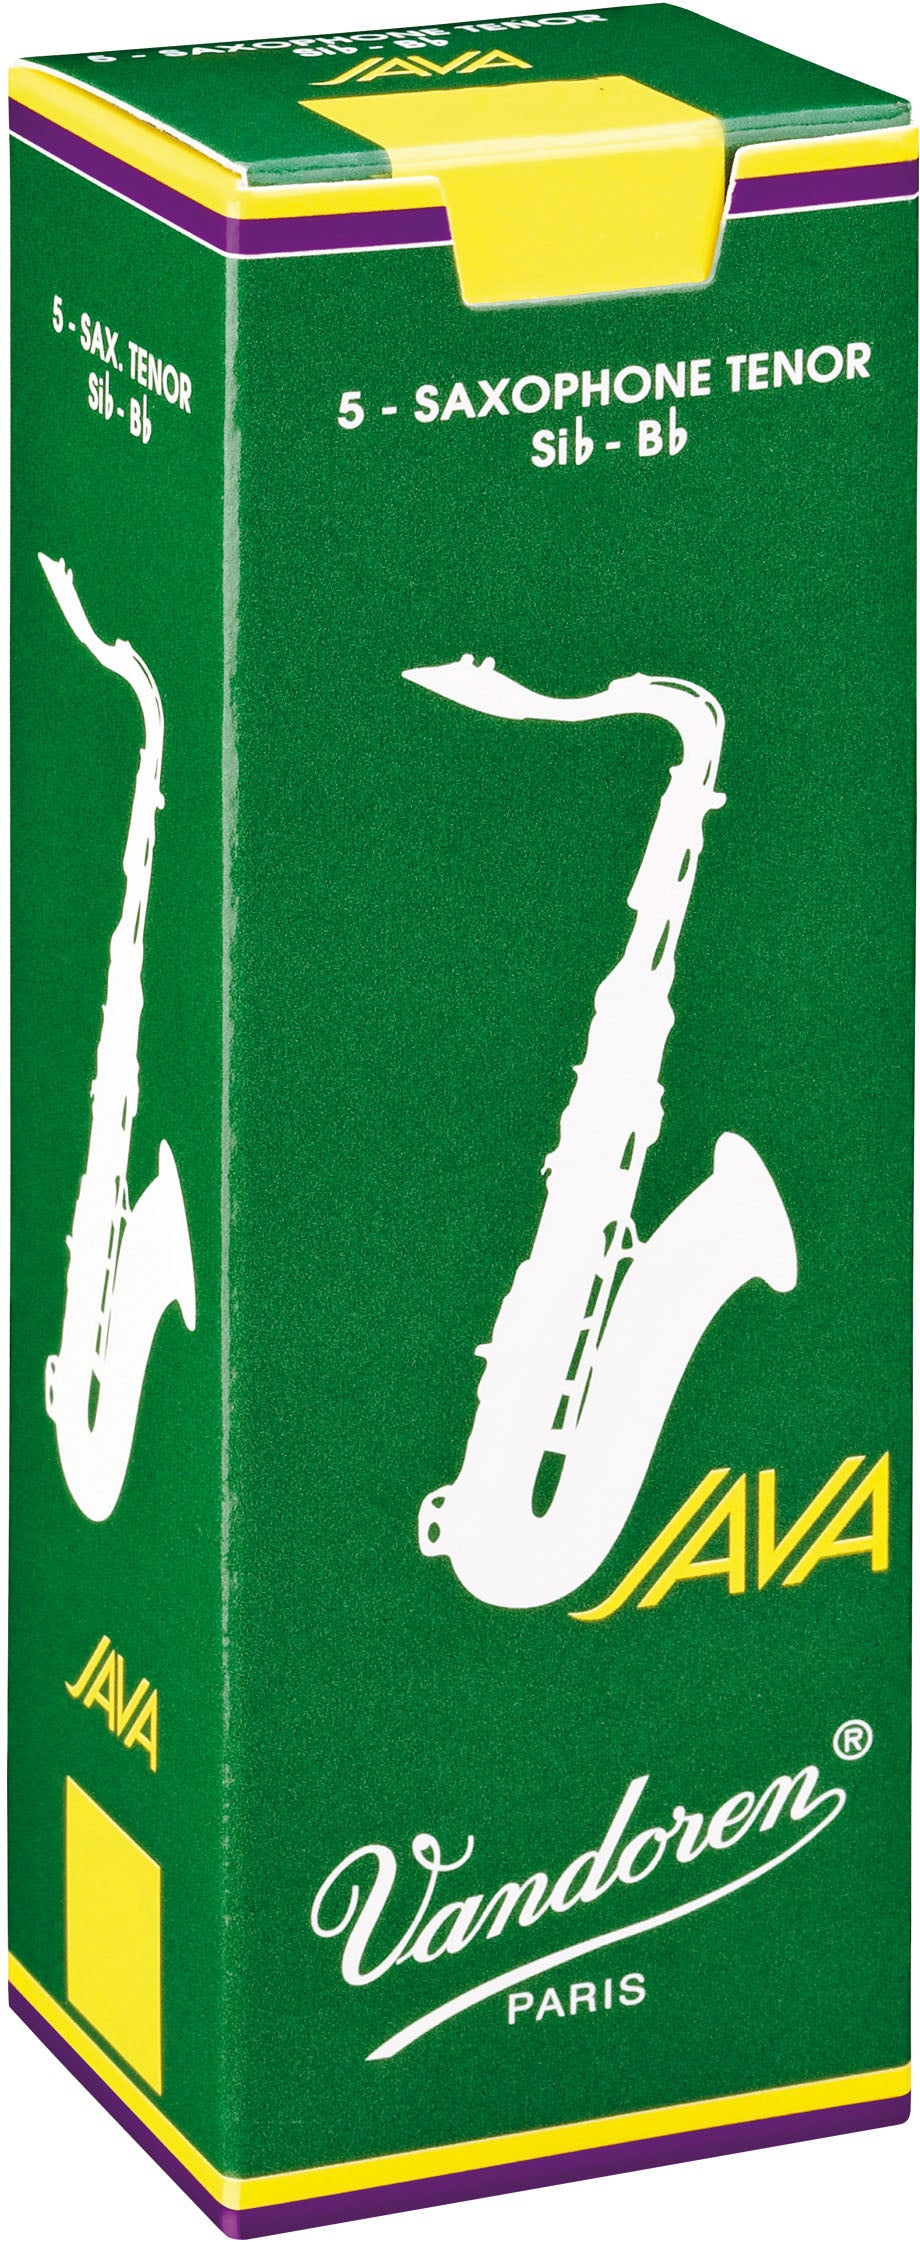 Vandoren Java Tenor Saxophone Reeds, Box of 5 - Strength 2.5